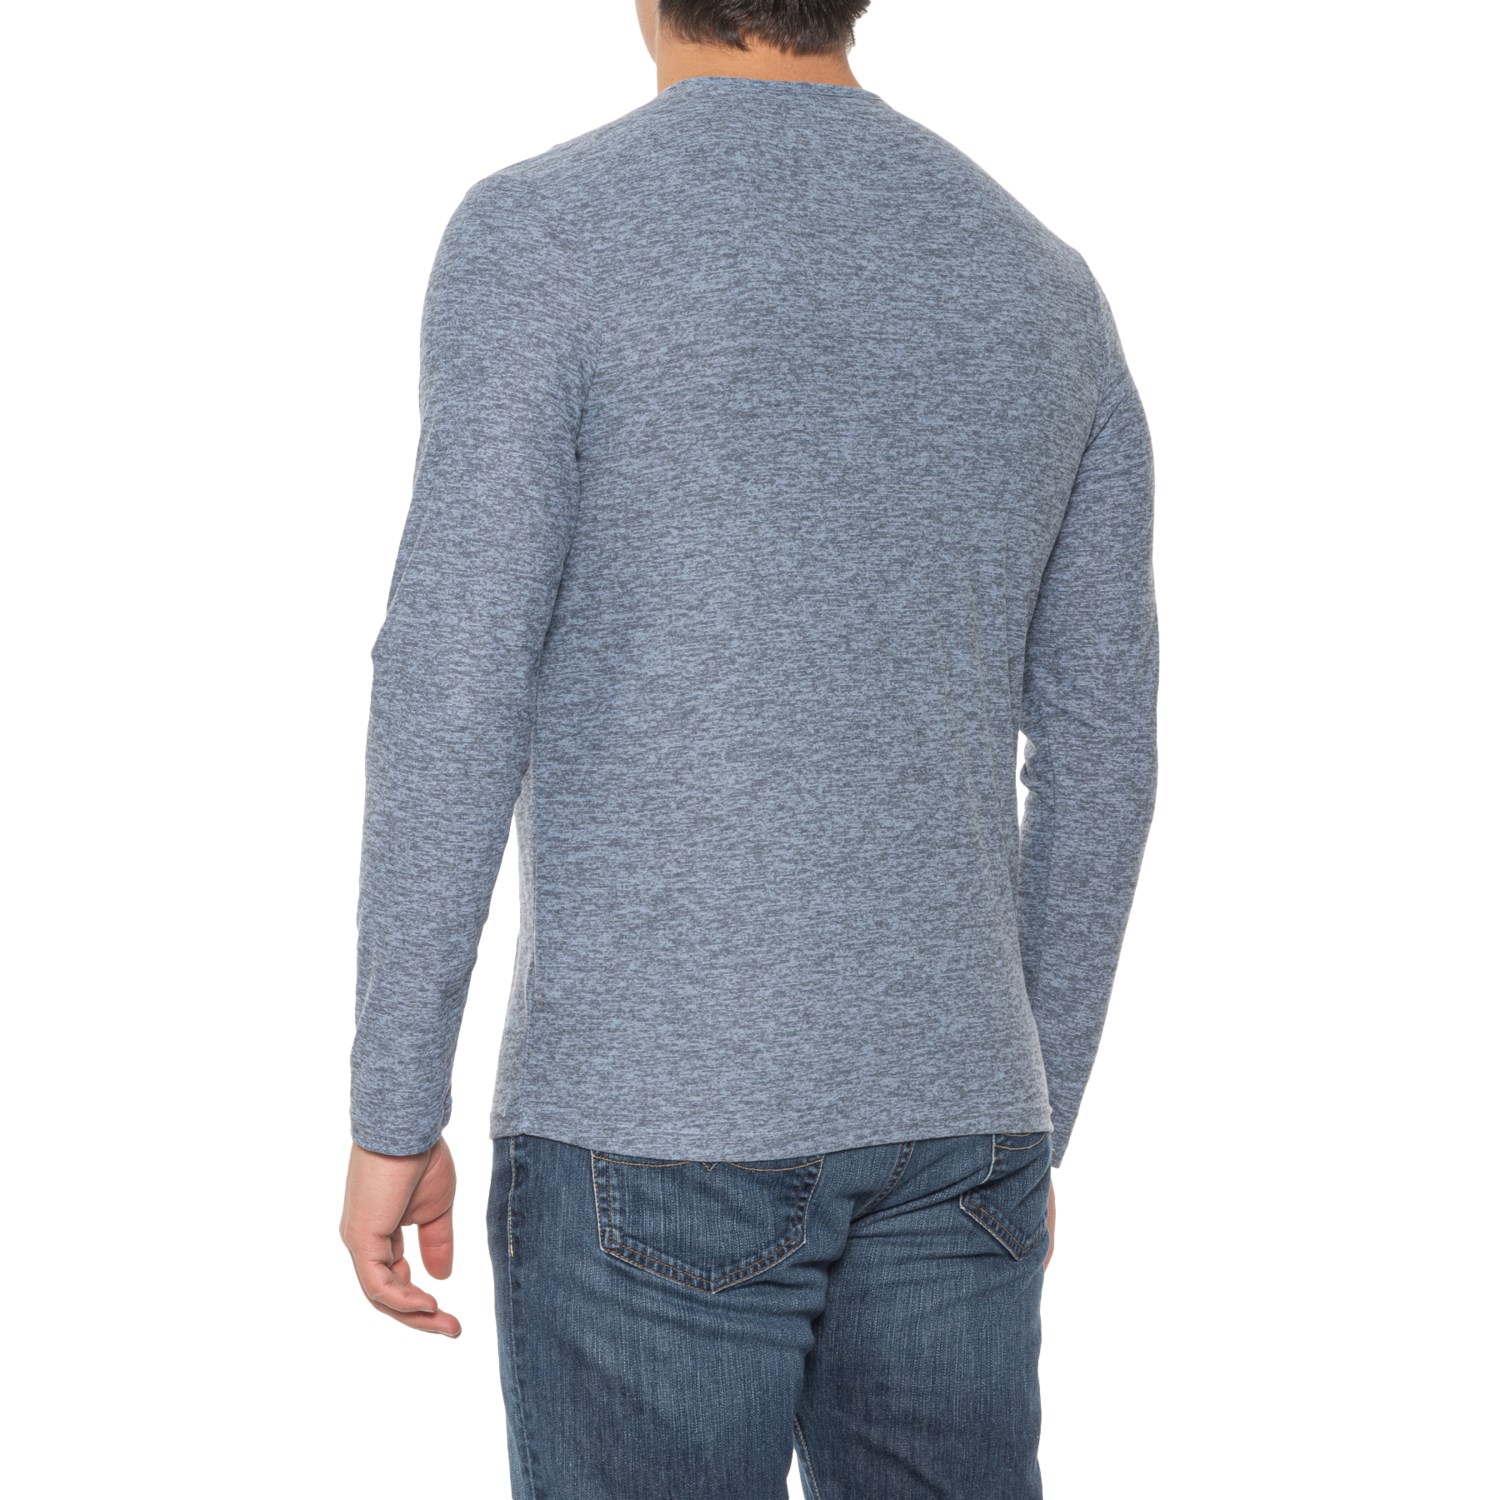 Original Supersoft Bruno Henley Shirt (For Men) - Save 44%